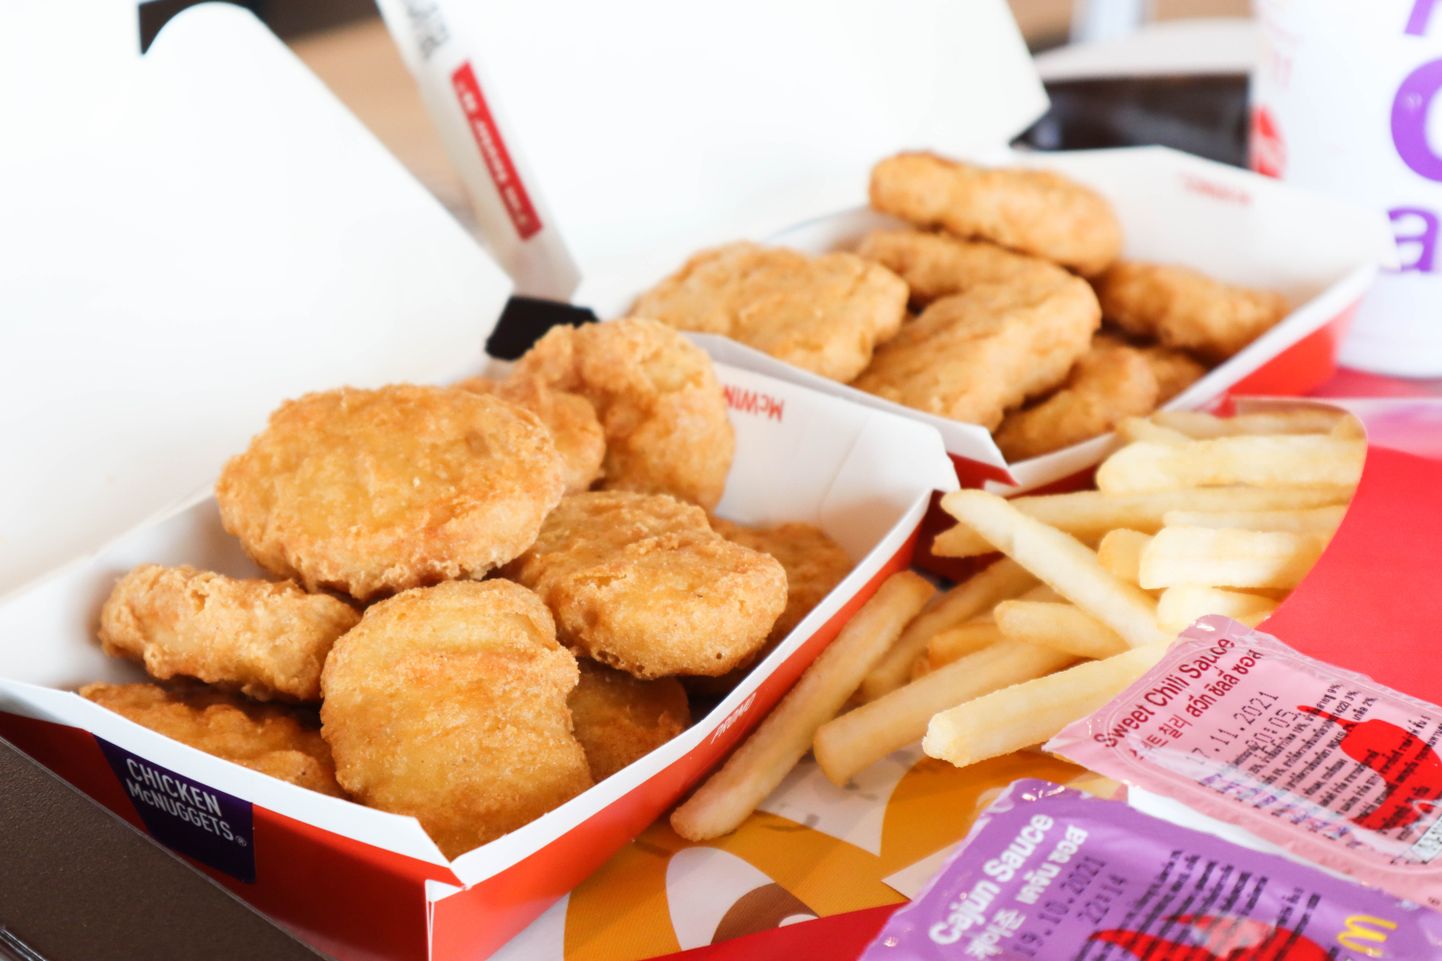 Куриные наггетсы и картофель фри из ресторана быстрого питания McDonald's. Снимок иллюстративный.